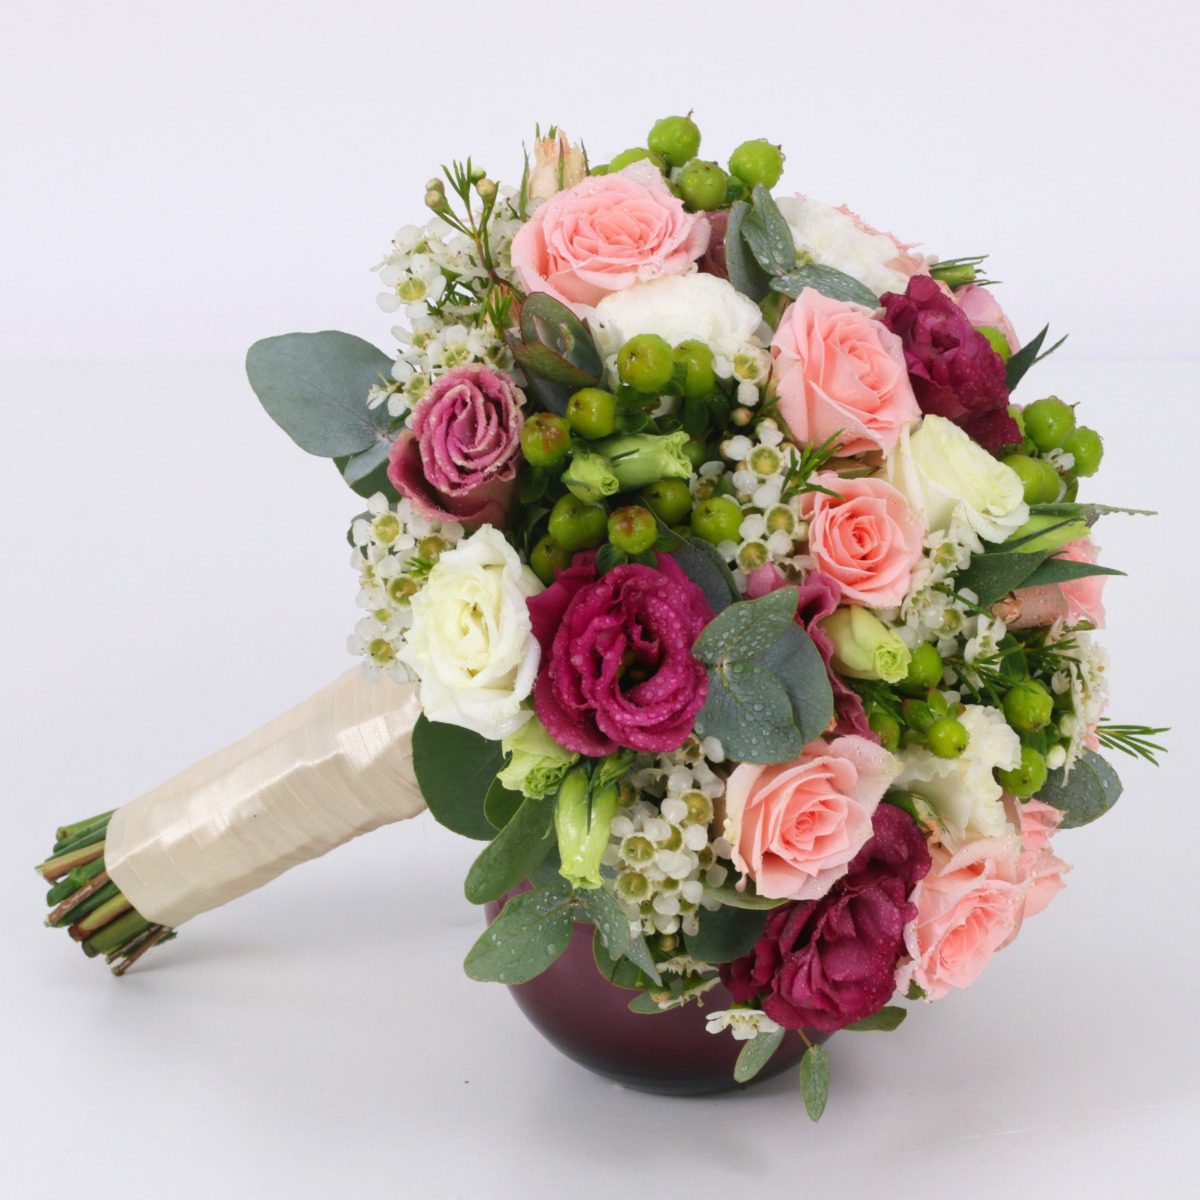 Mix Flower Bridal Bouquet | Wedding Bouquet Online Delivery